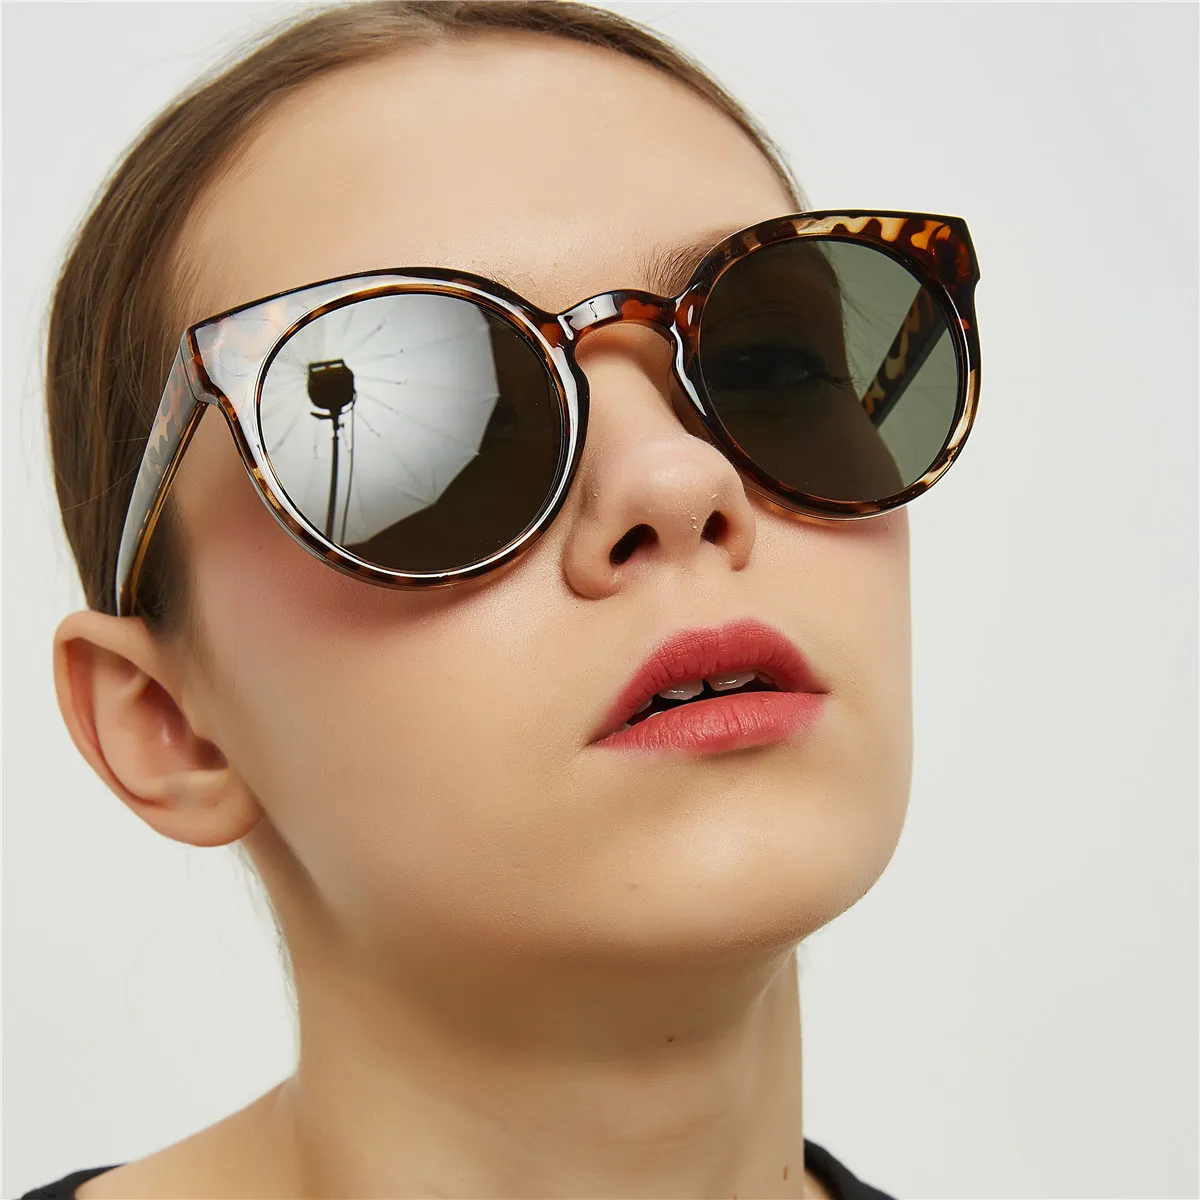 Женские круглые солнцезащитные очки, летние, с защитой от ультрафиолета, леопардовые, солнцезащитные очки, Ретро стиль, большие солнцезащитные очки